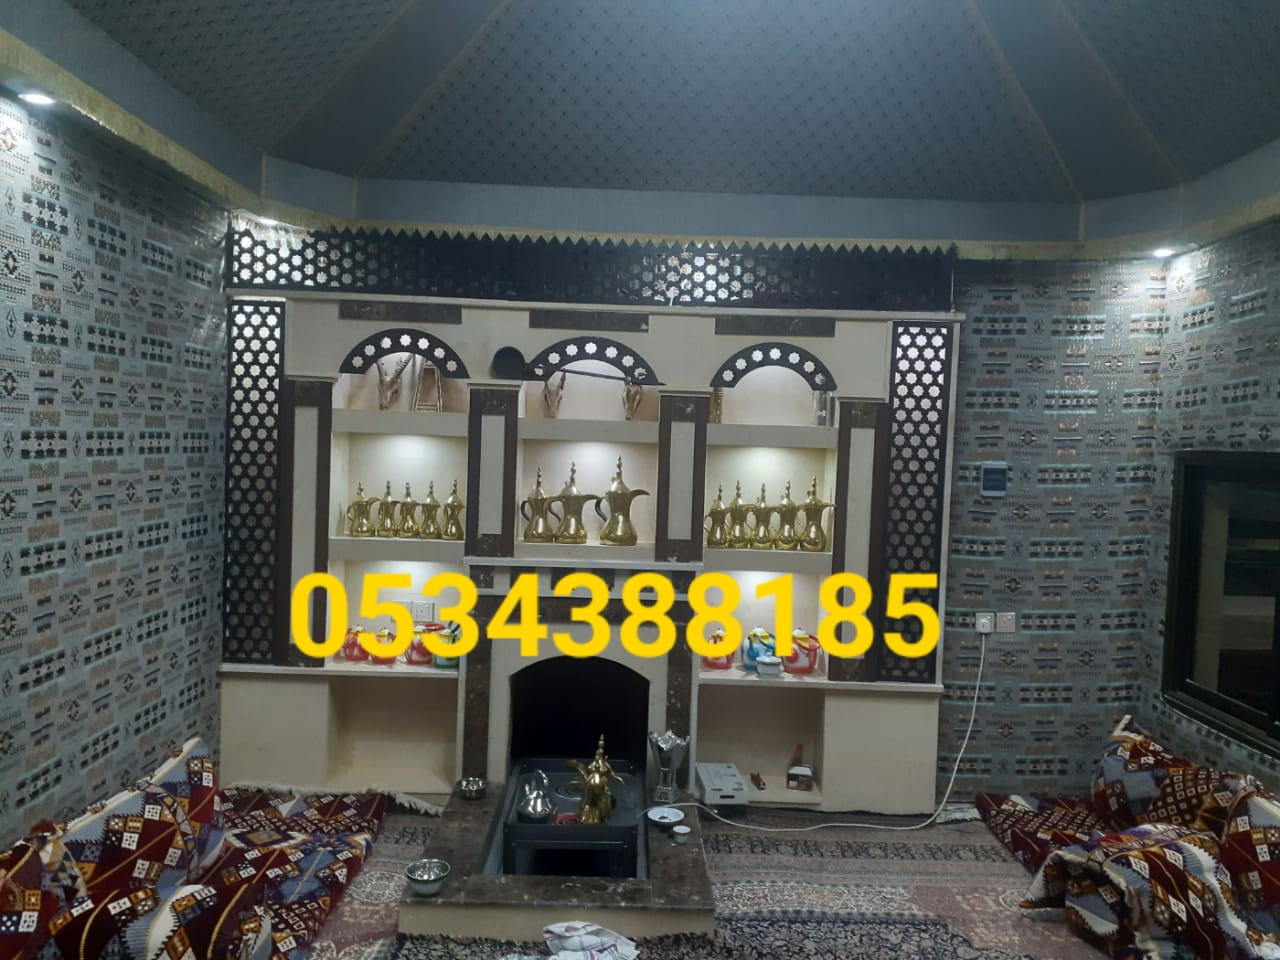 الرياض 0534388185 الرياض